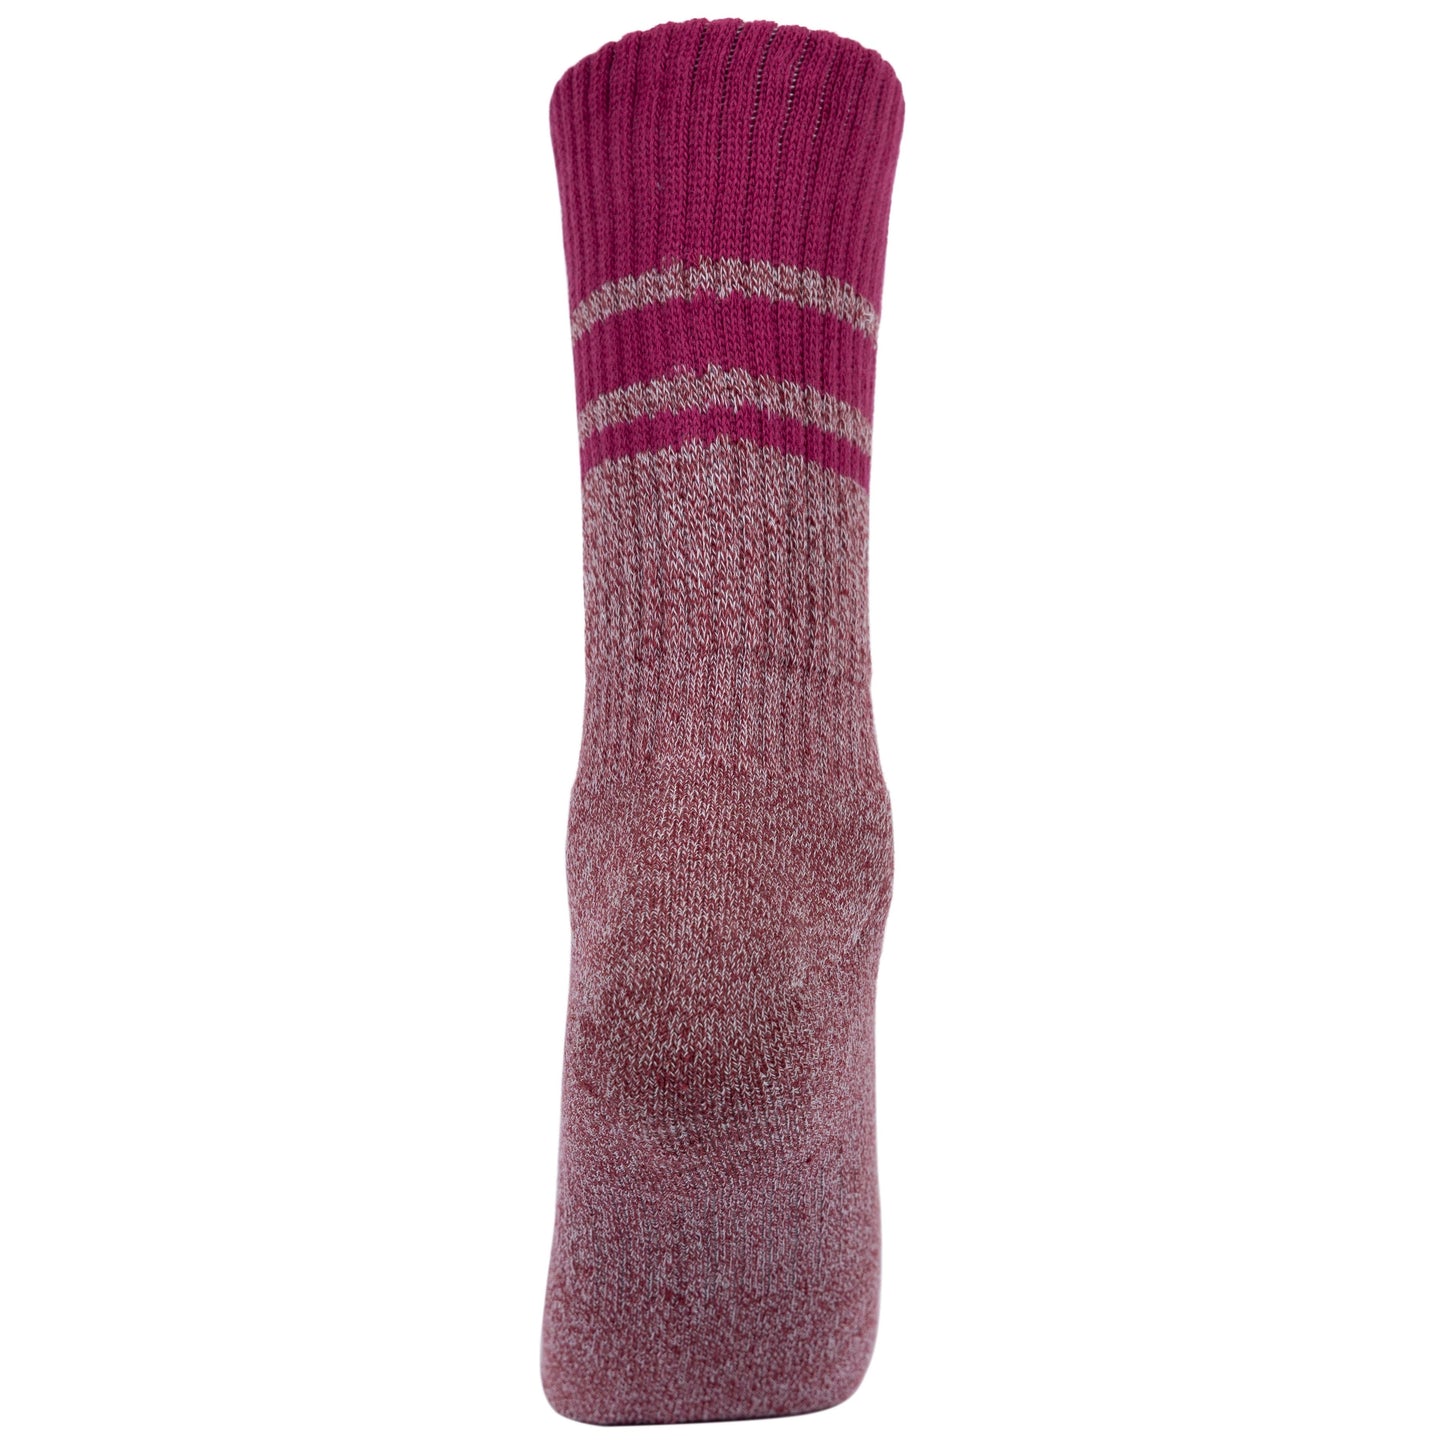 Hadley Women's Anti Blister Socks 2 Pack in Grapewine / Oatmeal